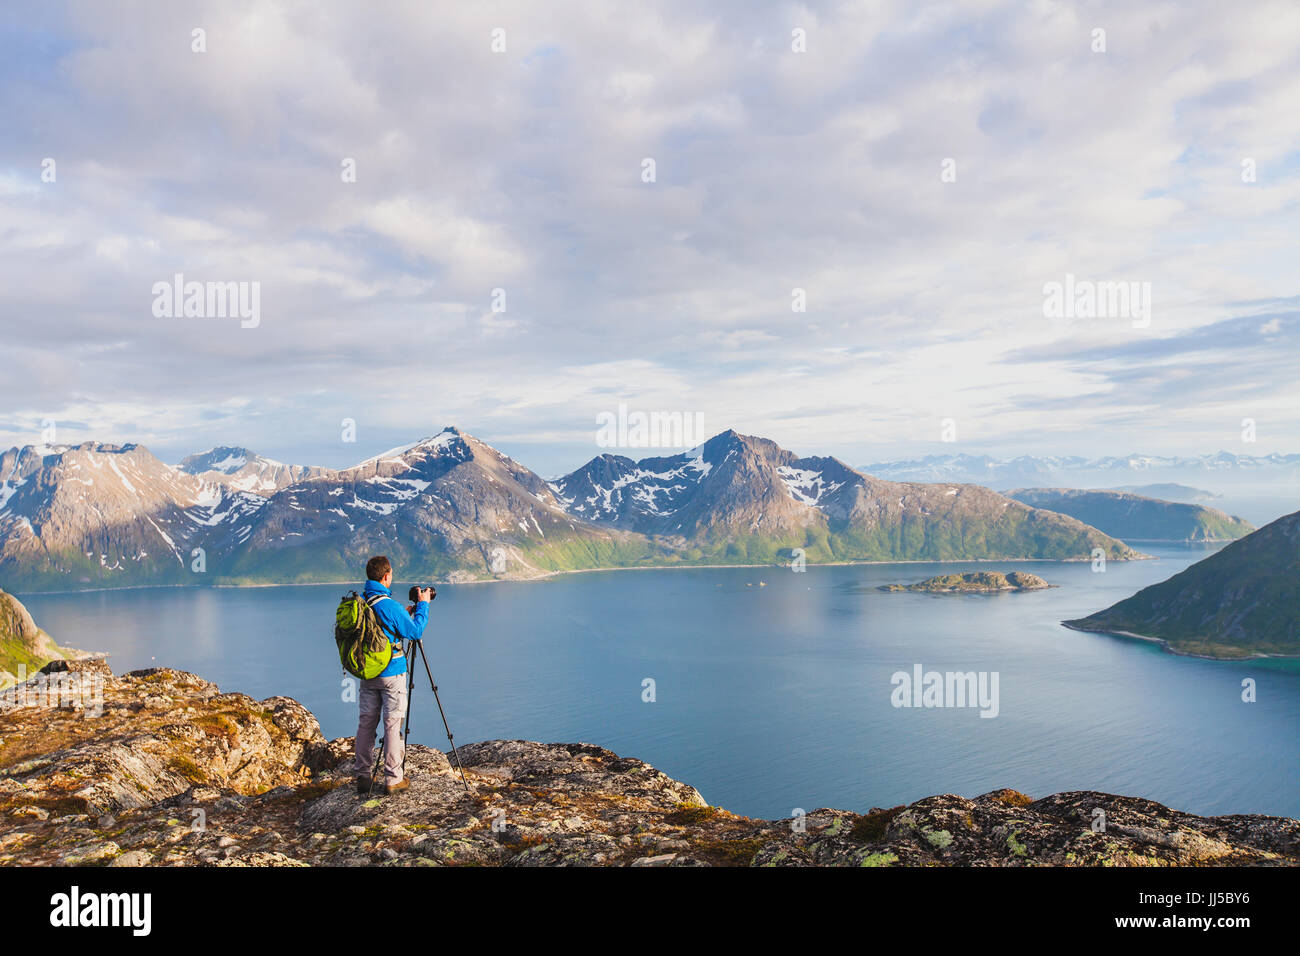 Natur-Landschaft-Fotograf mit Stativ und Dslr Kamera zu erfassen schöne Panorama-Landschaft, Reisefotografie Stockfoto